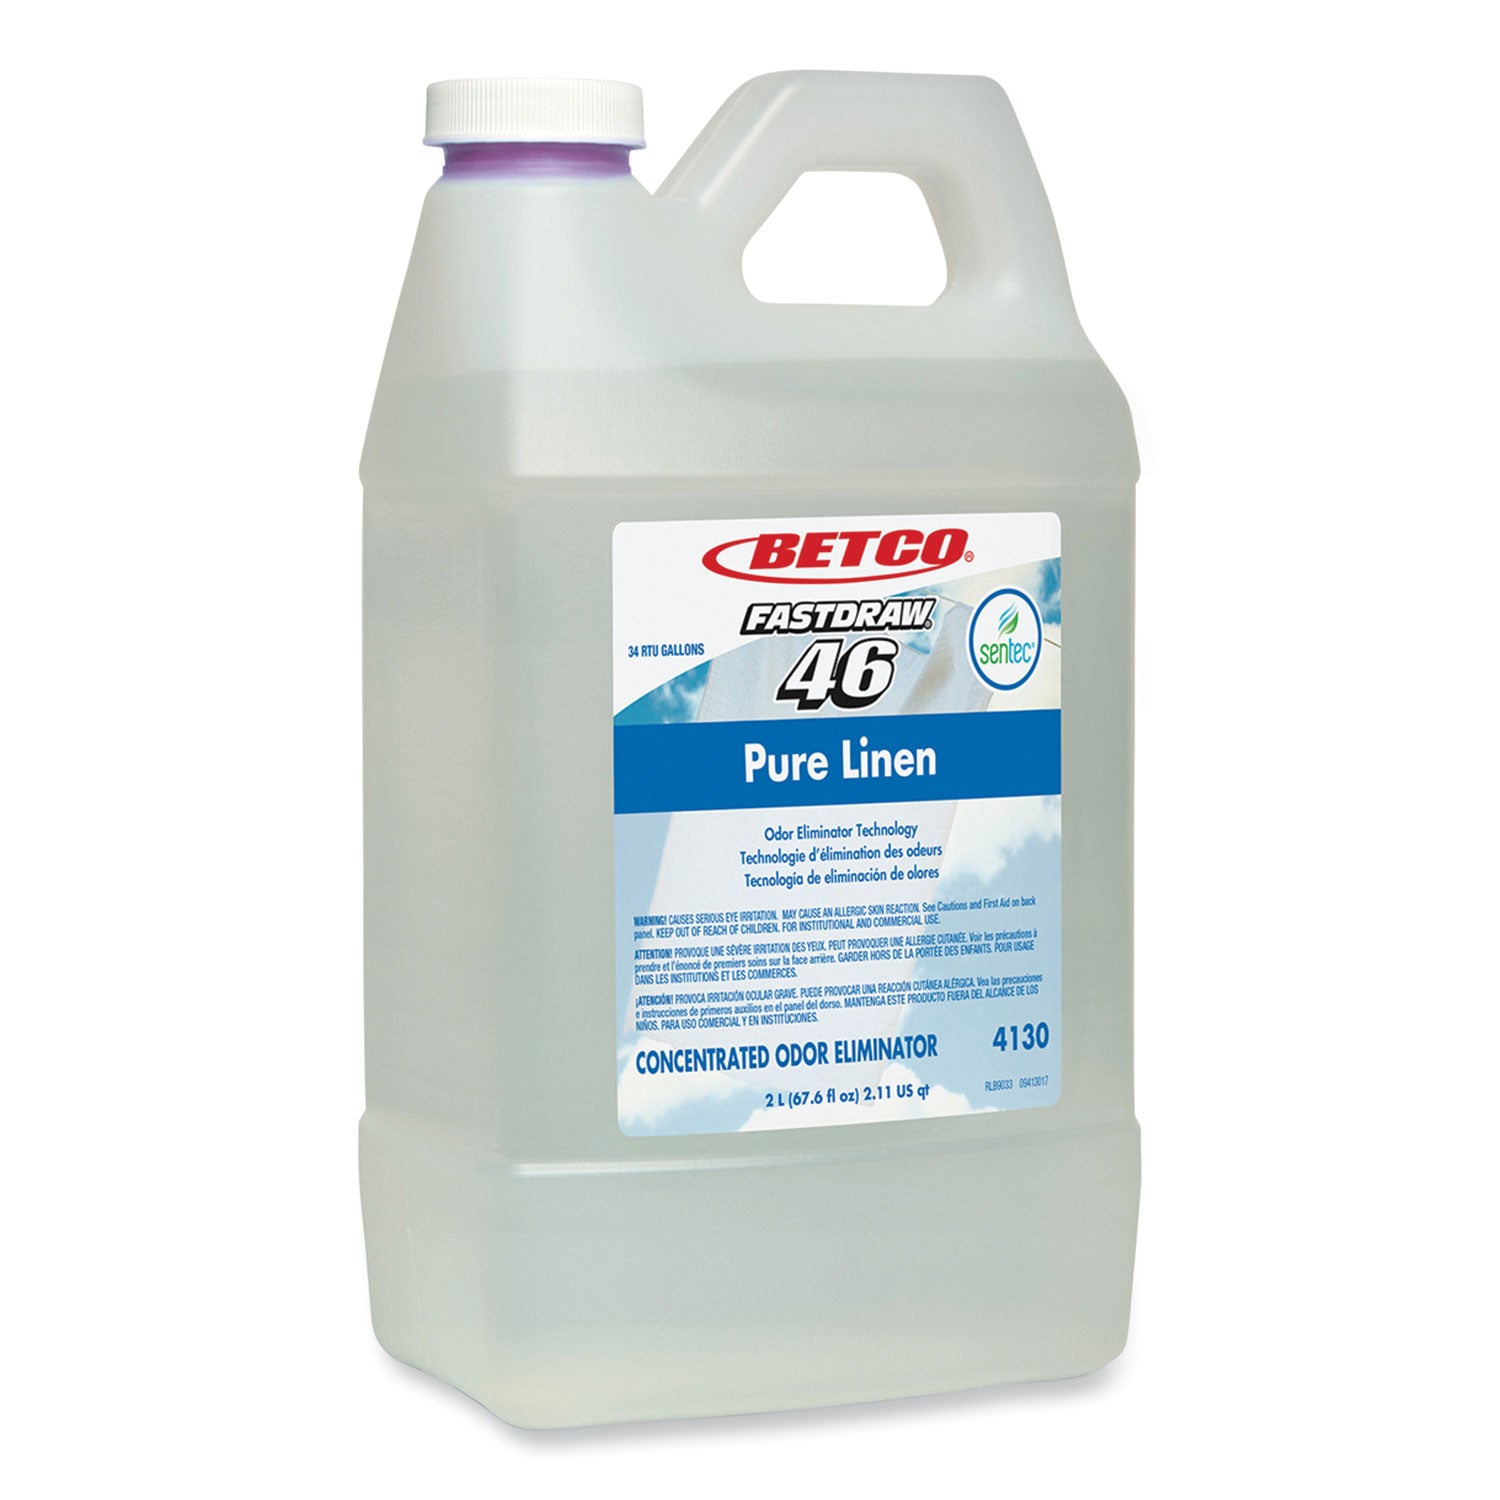 sentec-pure-linen-concentrate-odor-eliminator-pure-linen-scent-2-l-bottle-2-carton_bet4130b200 - 1